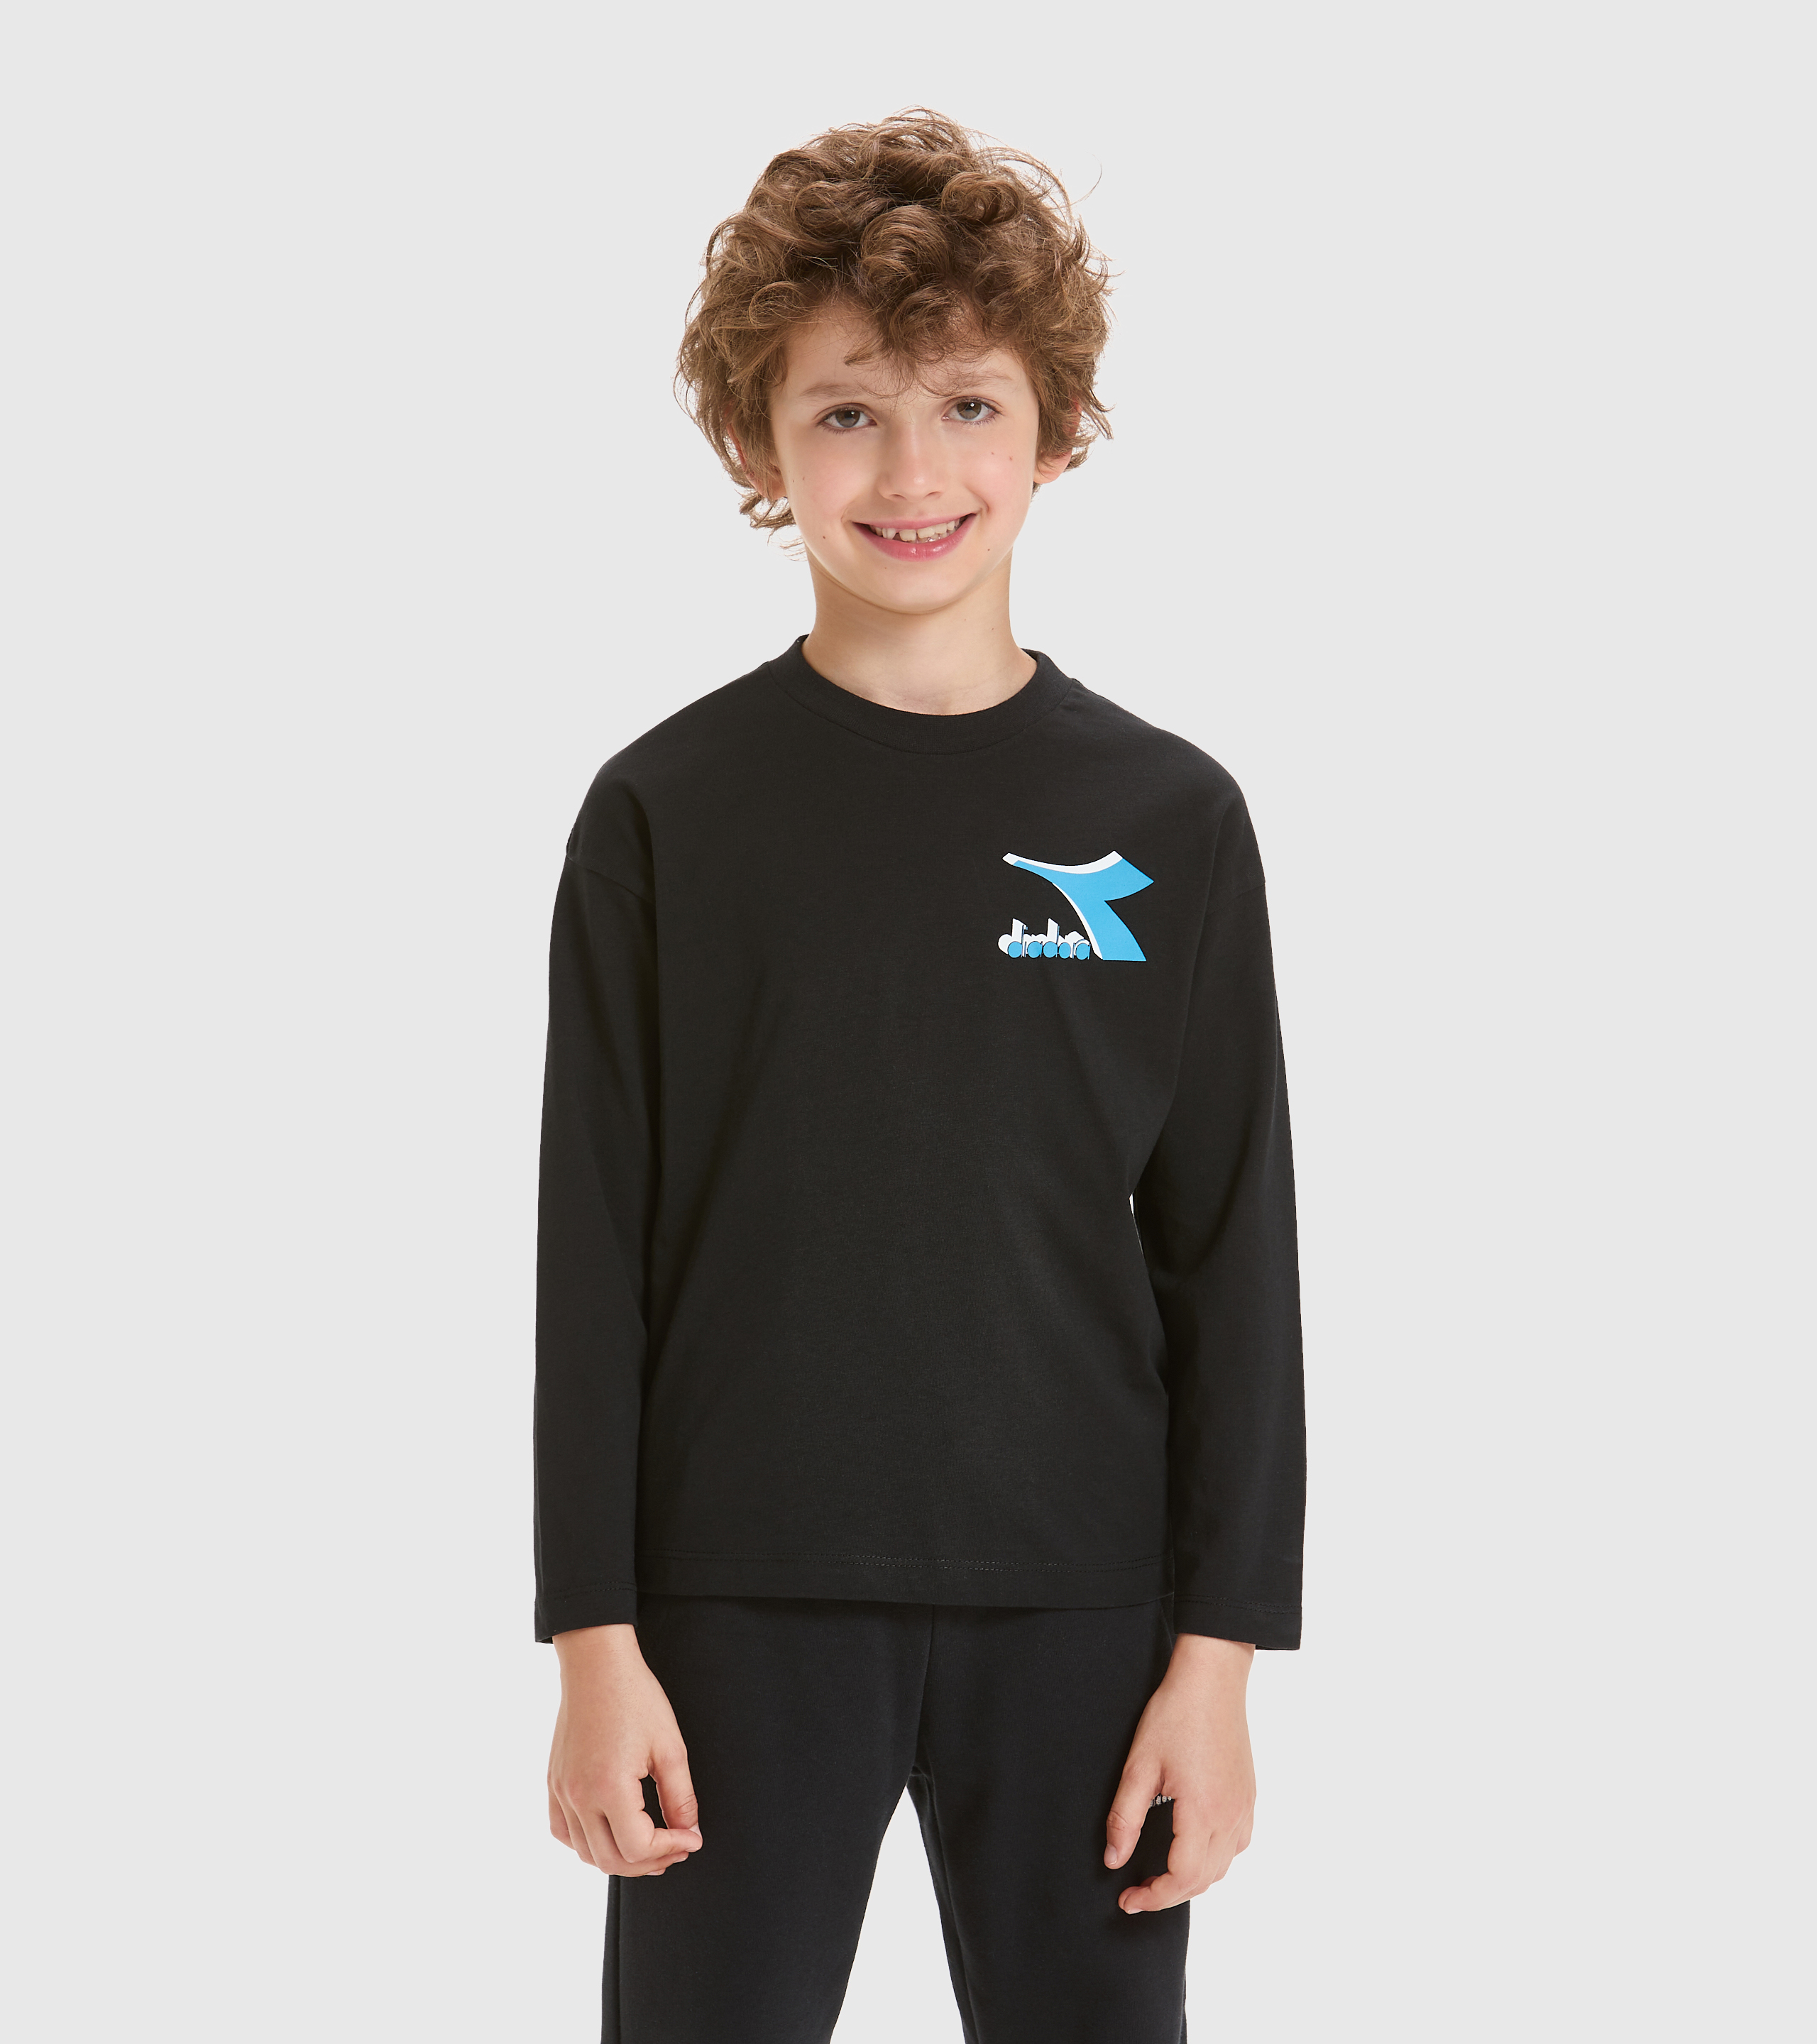 JU.LS T-SHIRT CUBIC T-shirt - Kids - Diadora Online Store US